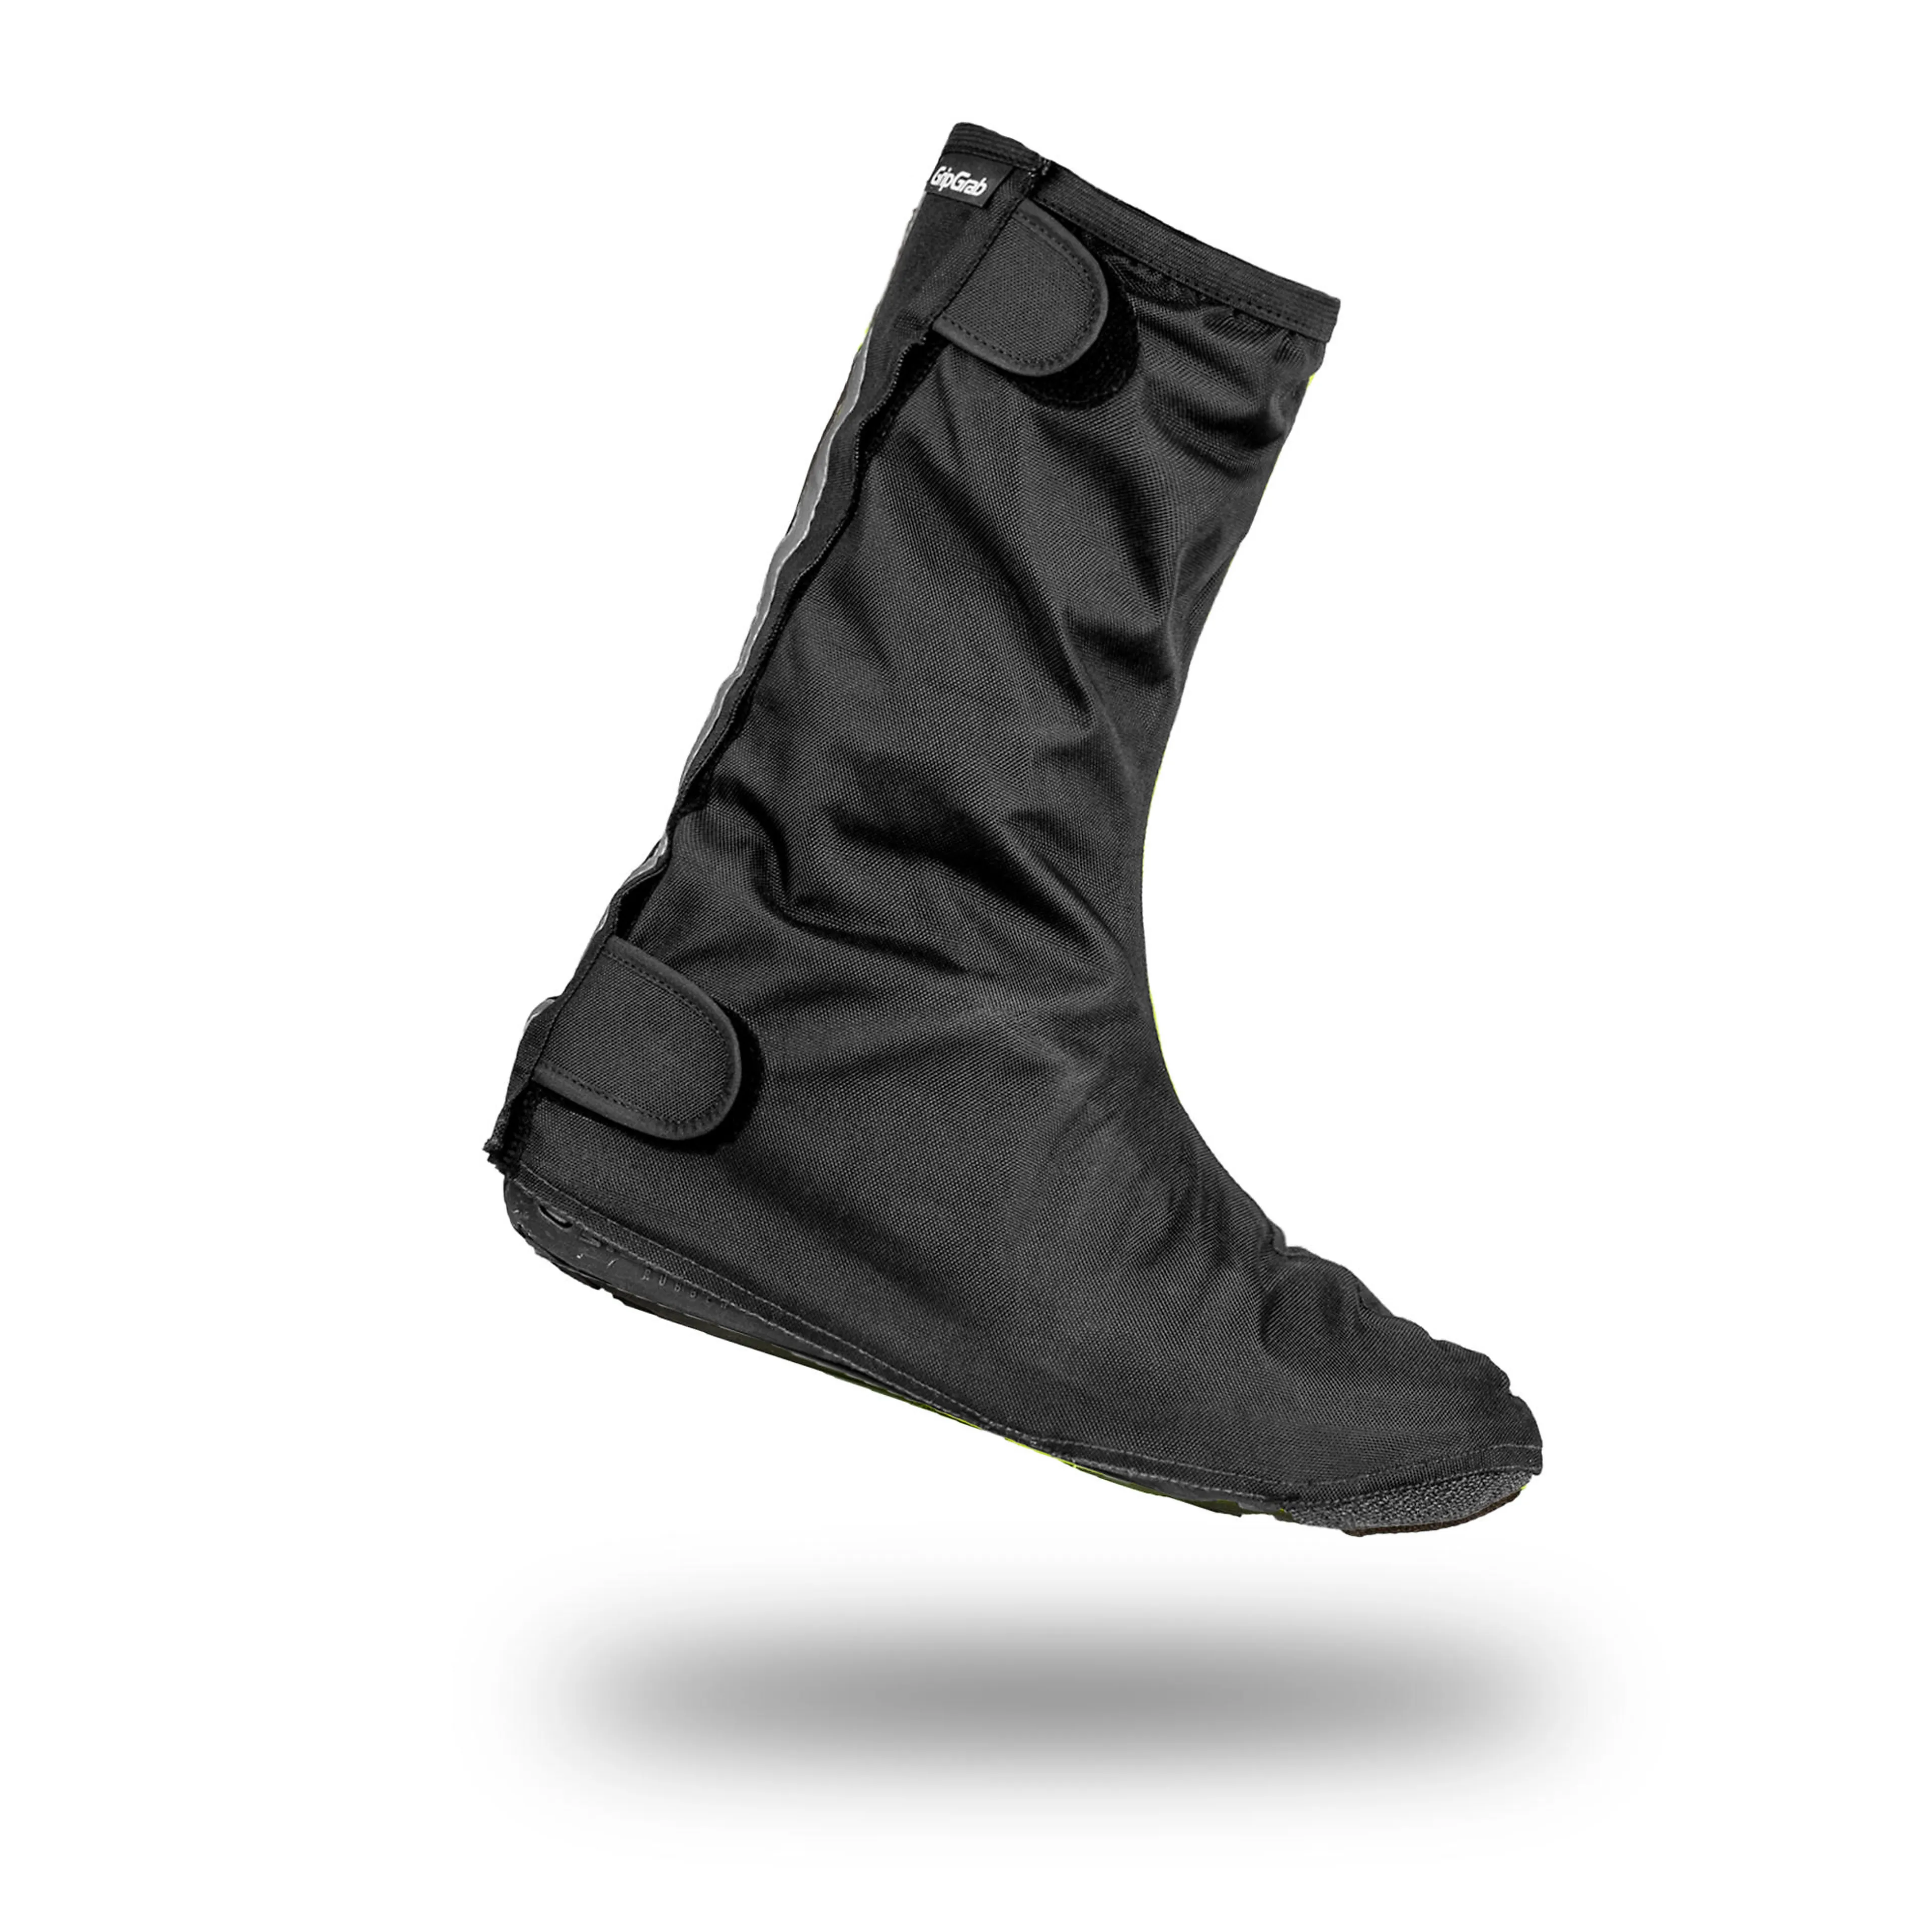 Skotrekk DryFoot Waterproof Everyday Shoe Covers 2